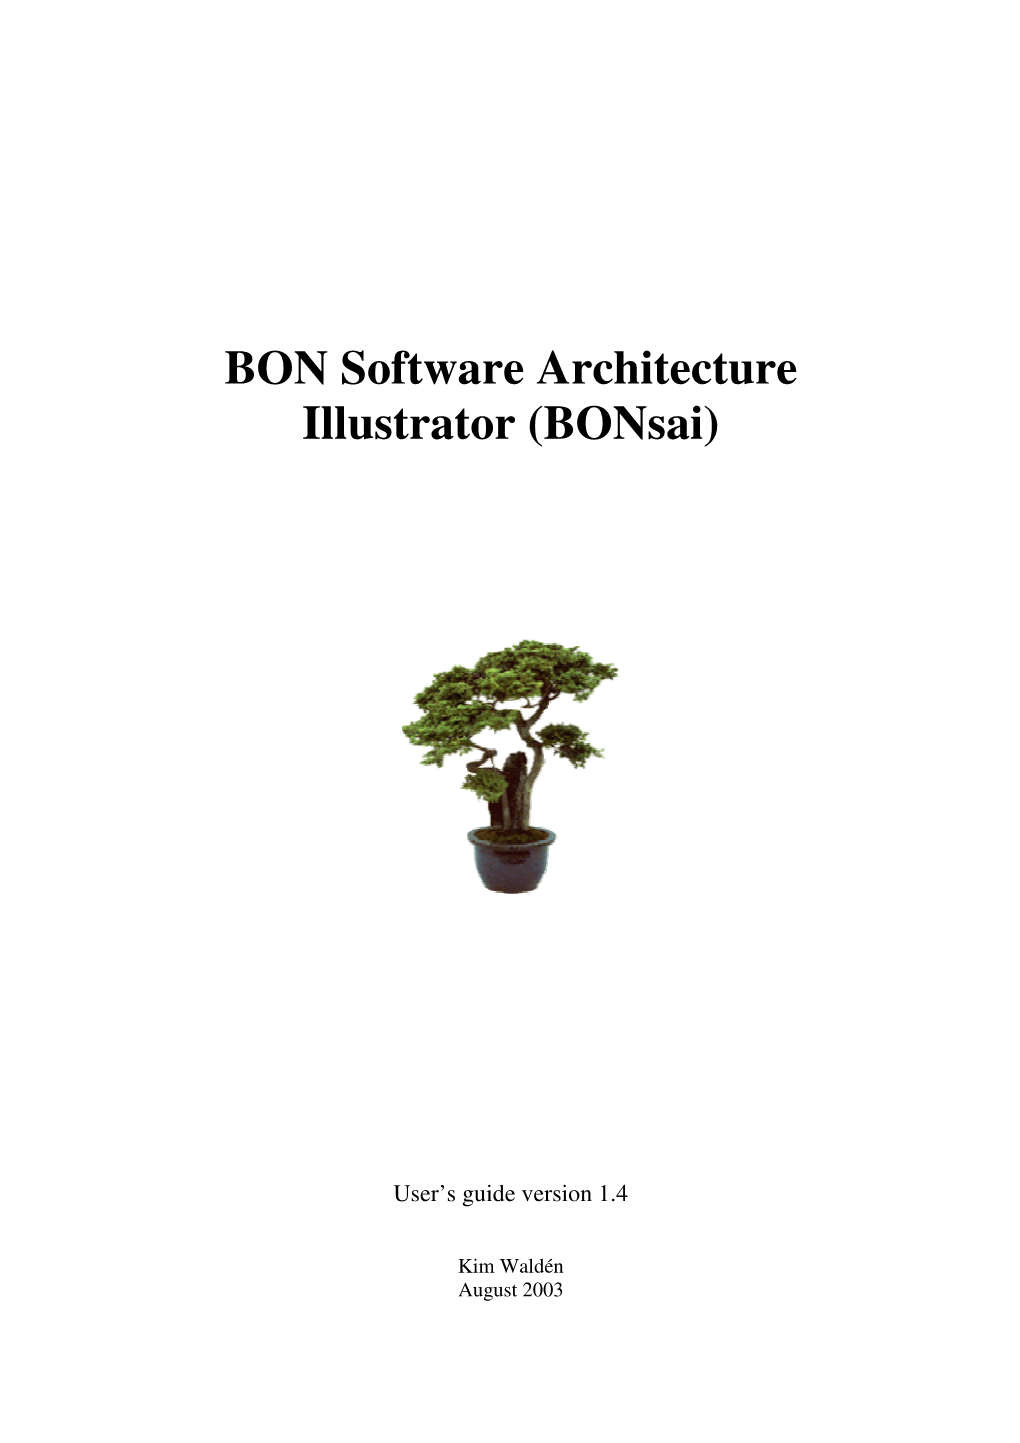 BON Software Architecture Illustrator (Bonsai)